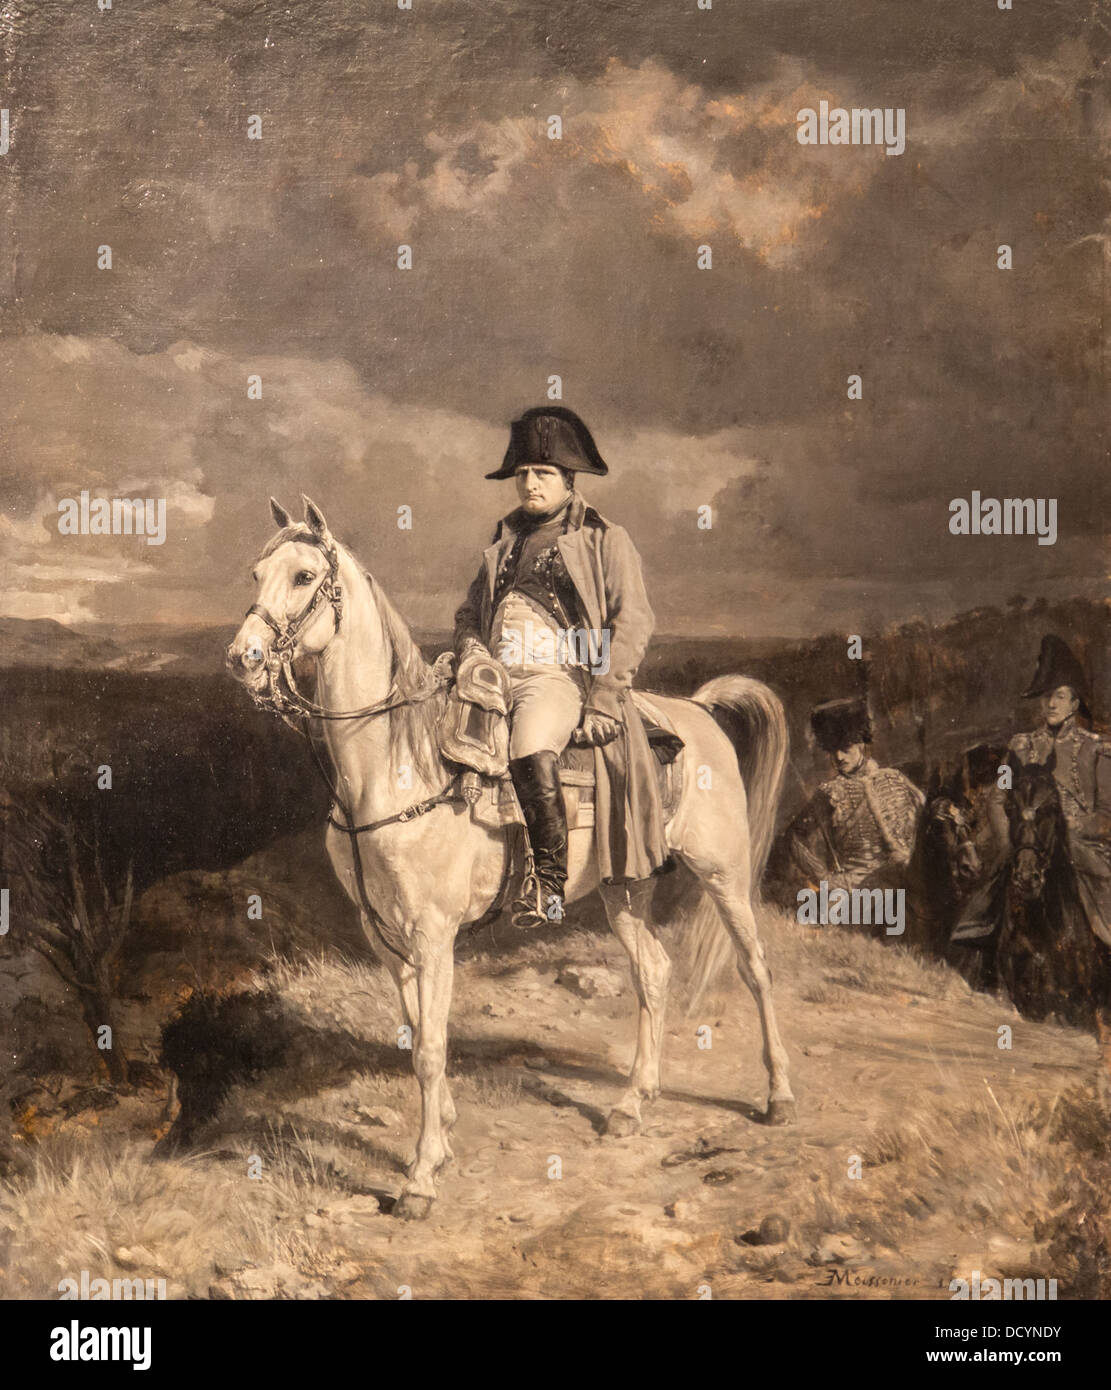 19e siècle - Napoléon en 1814 - Jean-Louis Ernest Meissonier (1863) - Paris France - Huile sur toile Banque D'Images